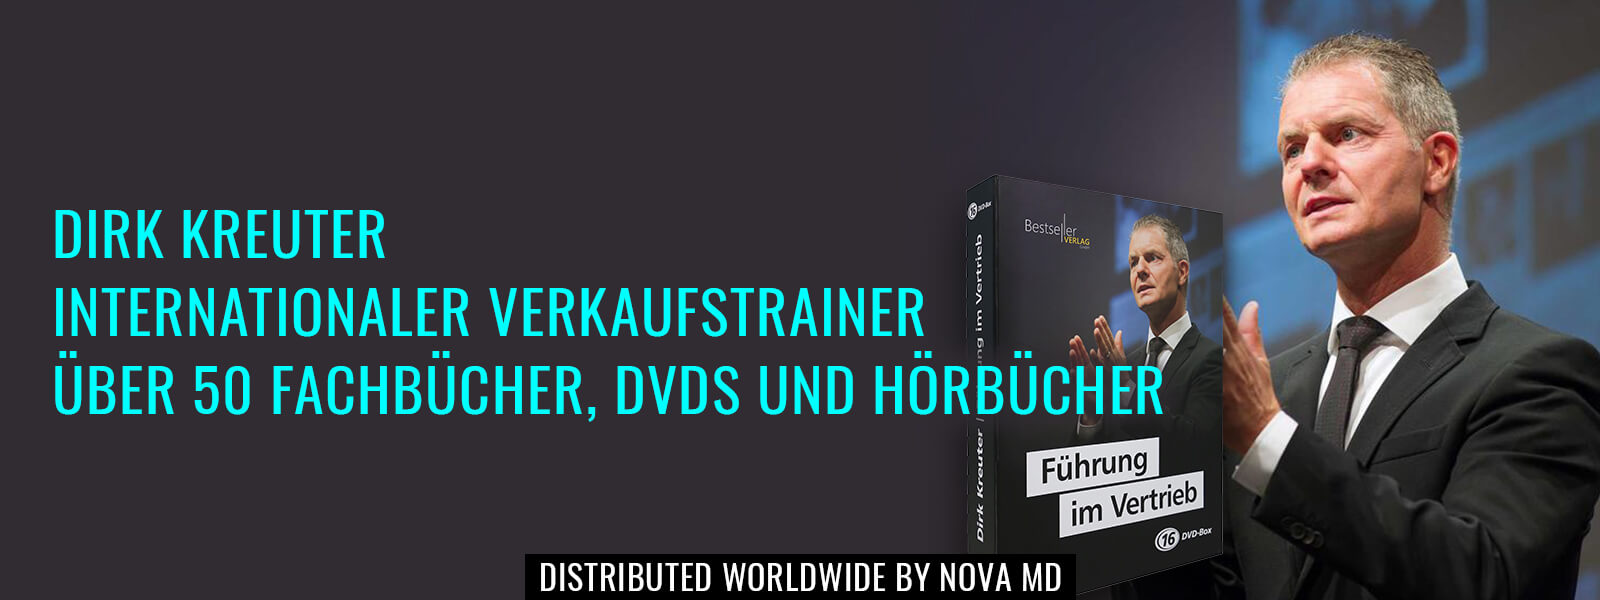 Dirk Kreuter, Verkaufstrainer und Bestseller-Autor